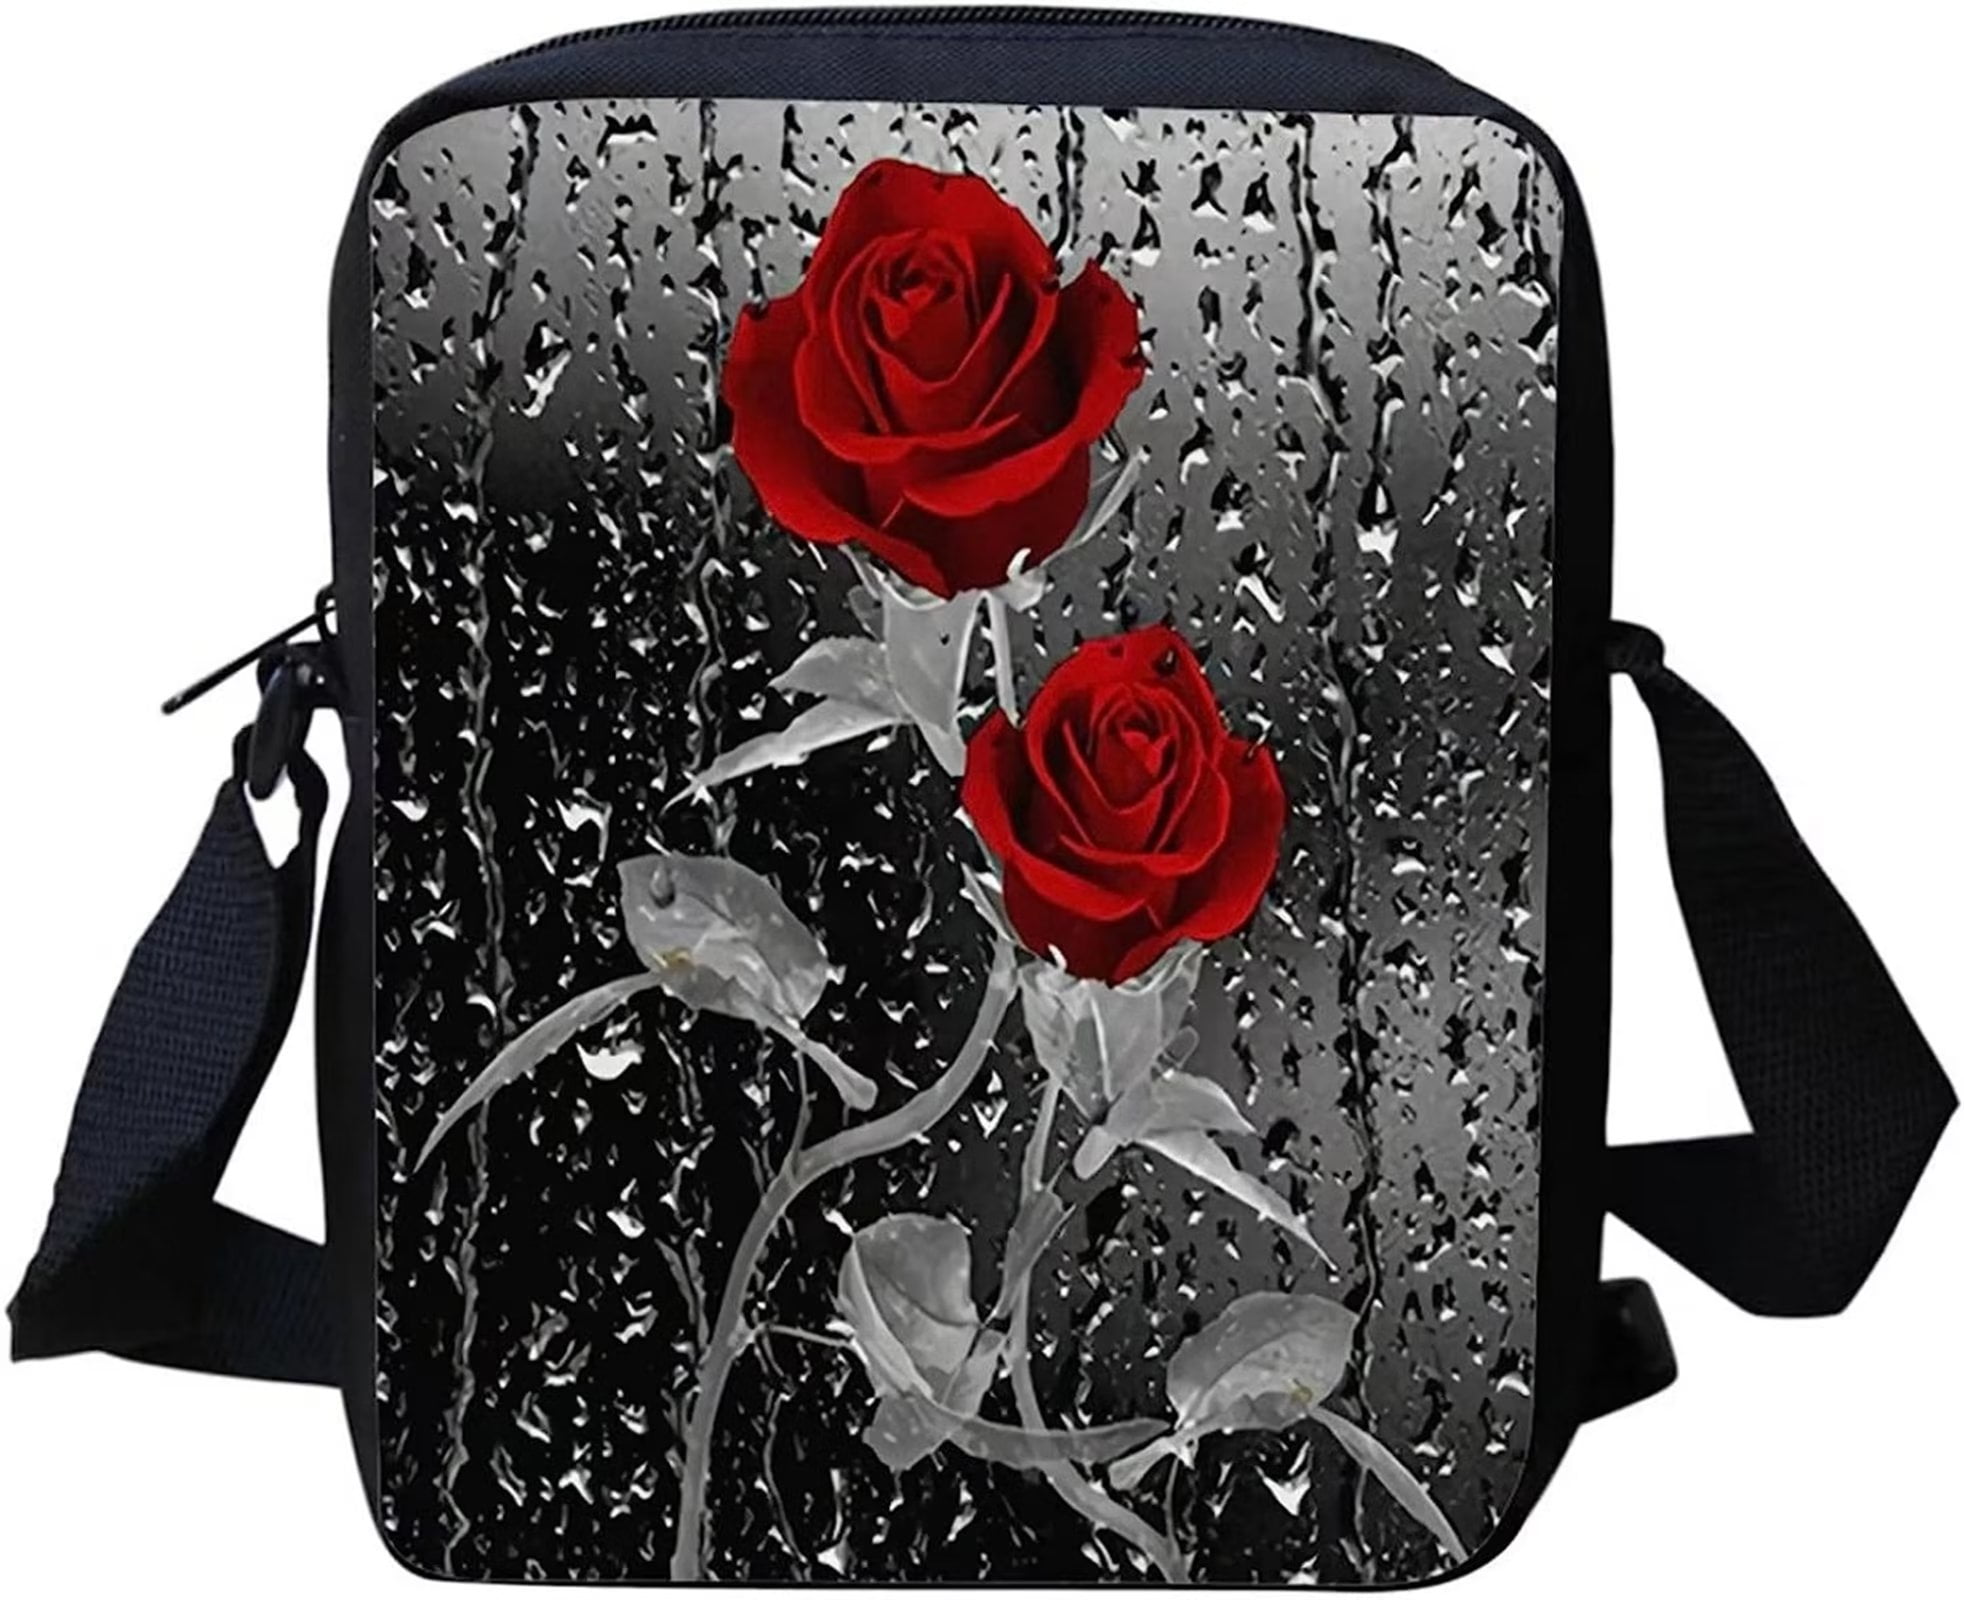 Pzuqiu Gothic Rose Crossbody Cell Phone Purse Small Messenger Bags for  Women Teen Girls ross Body Shoulder Handbag TravelOrganizer Beach Satchel  Stuff Sack 